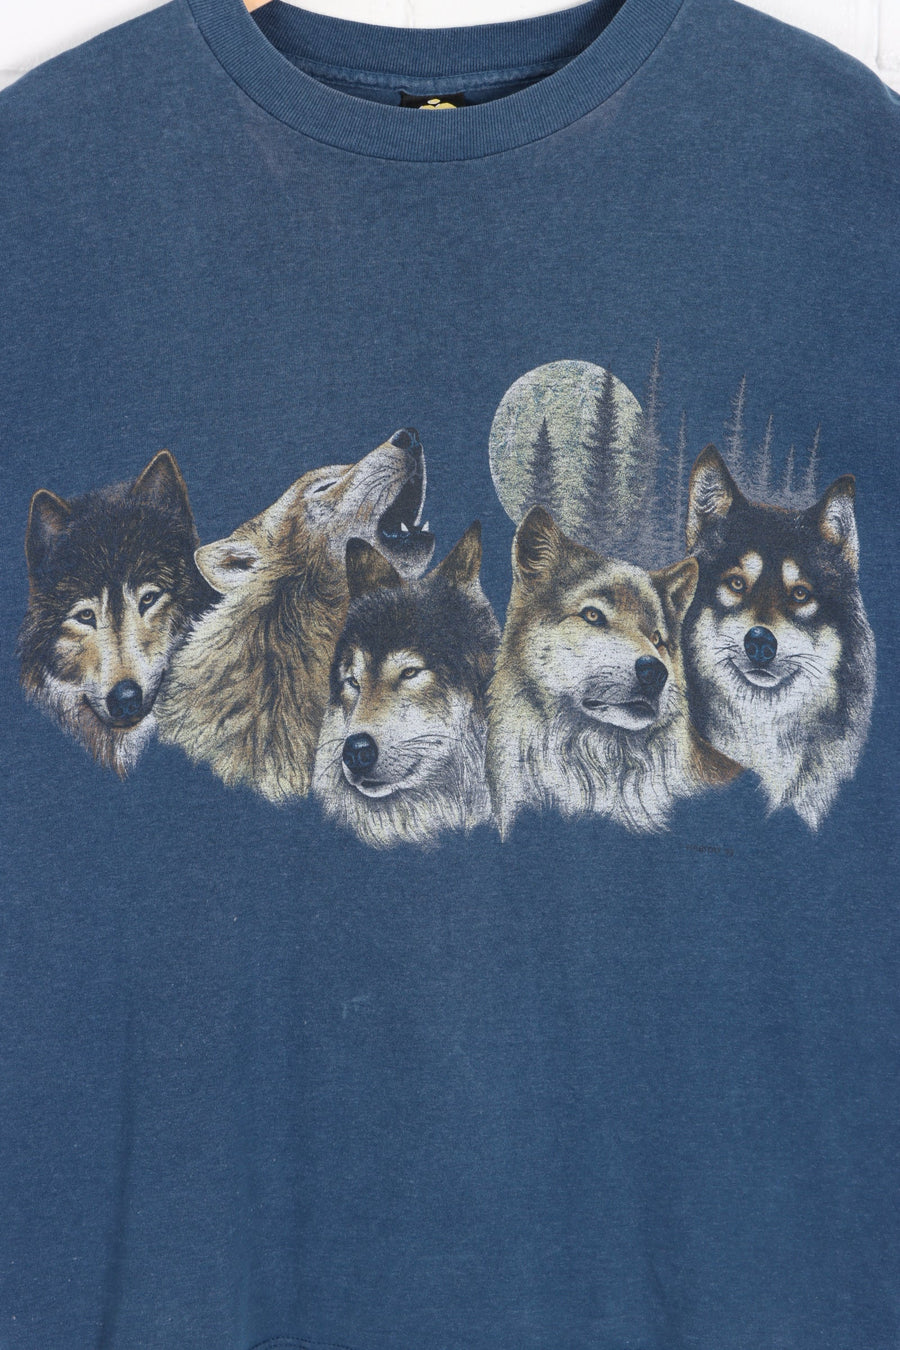 HABITAT 1992 Wolves & Moon Front Back Single Stitch T-Shirt (L) - Vintage Sole Melbourne